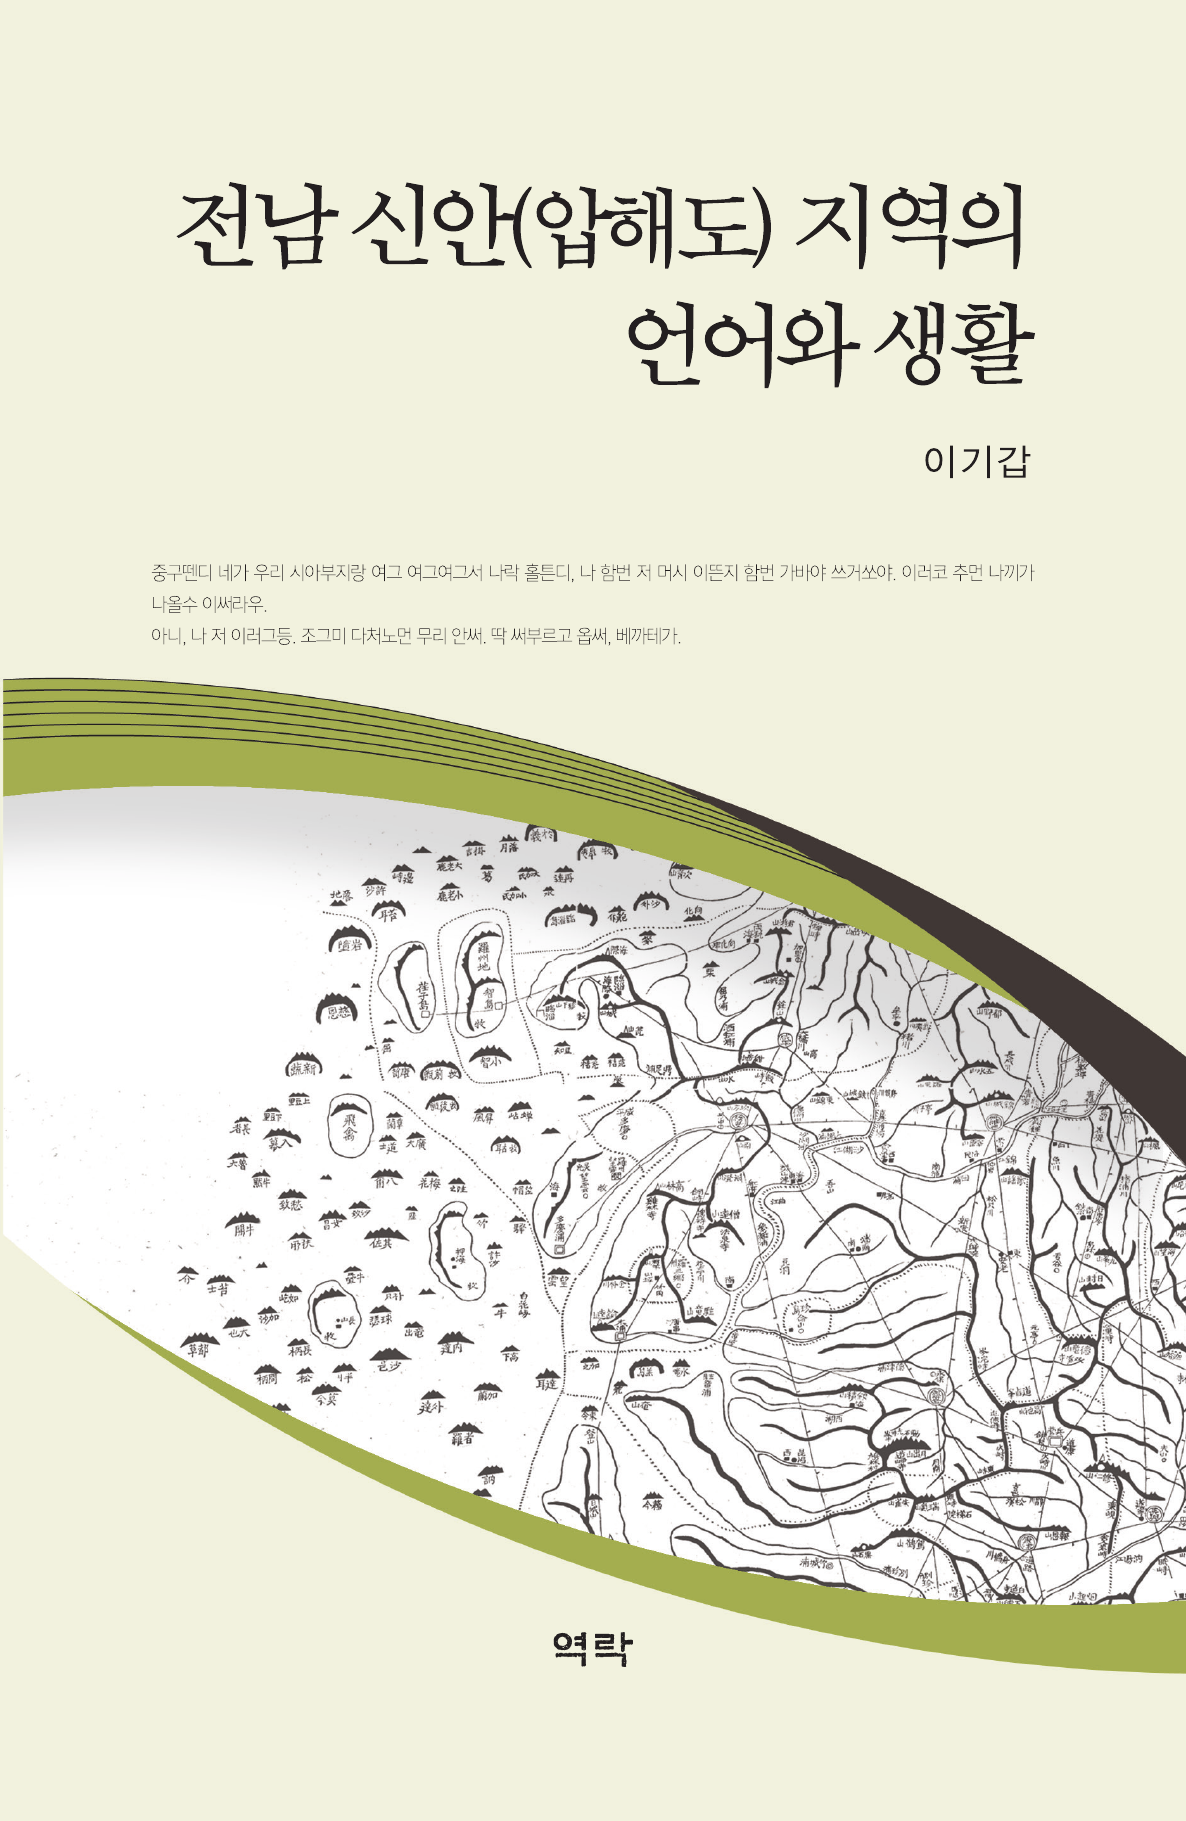 전남 신안(압해도) 지역의 언어와 생활